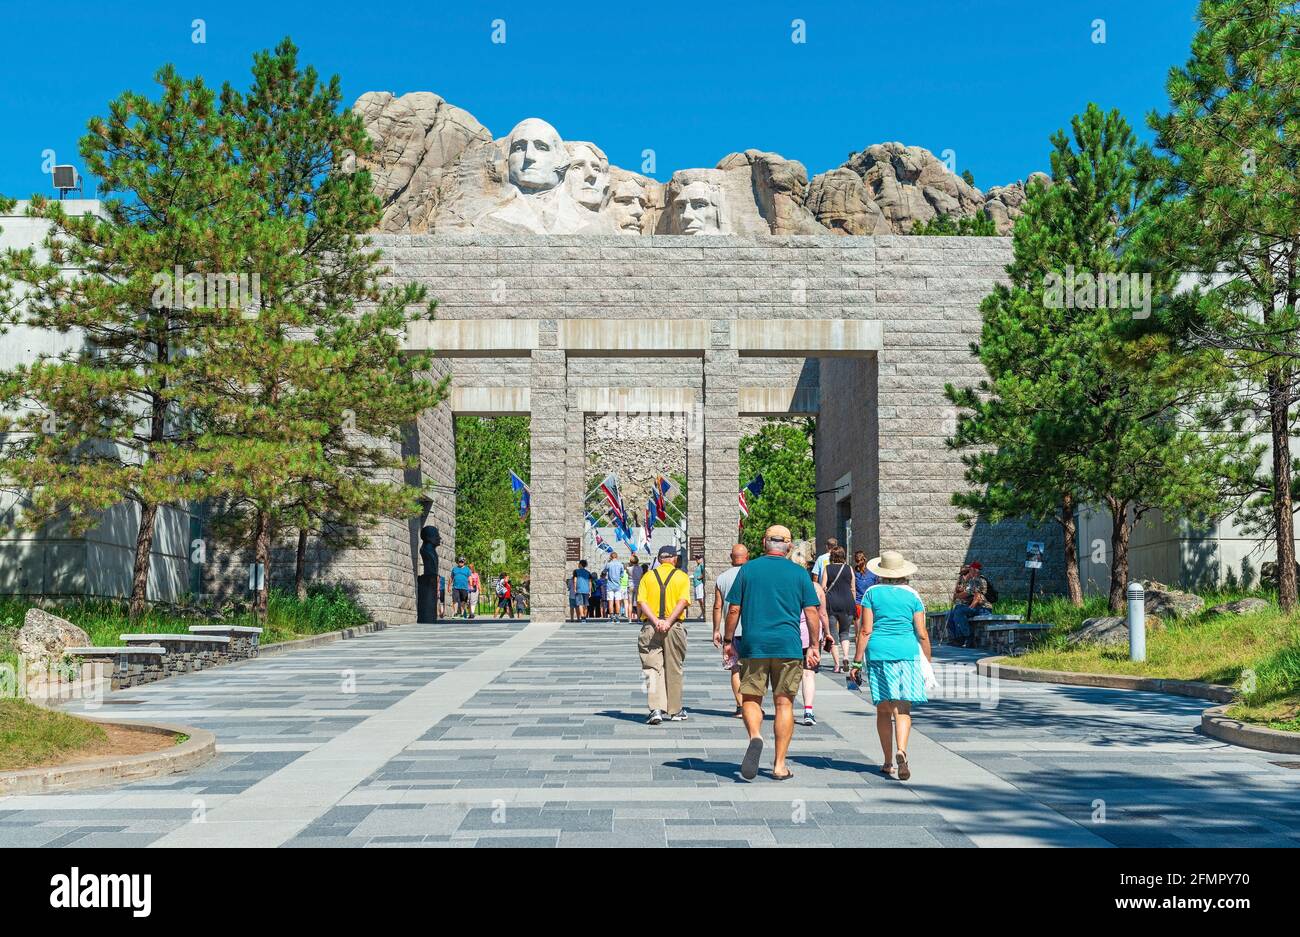 Touristes marchant à l'entrée du mémorial national du Mont Rushmore avec les visages sculptés des présidents américains, Dakota du Sud, États-Unis. Banque D'Images